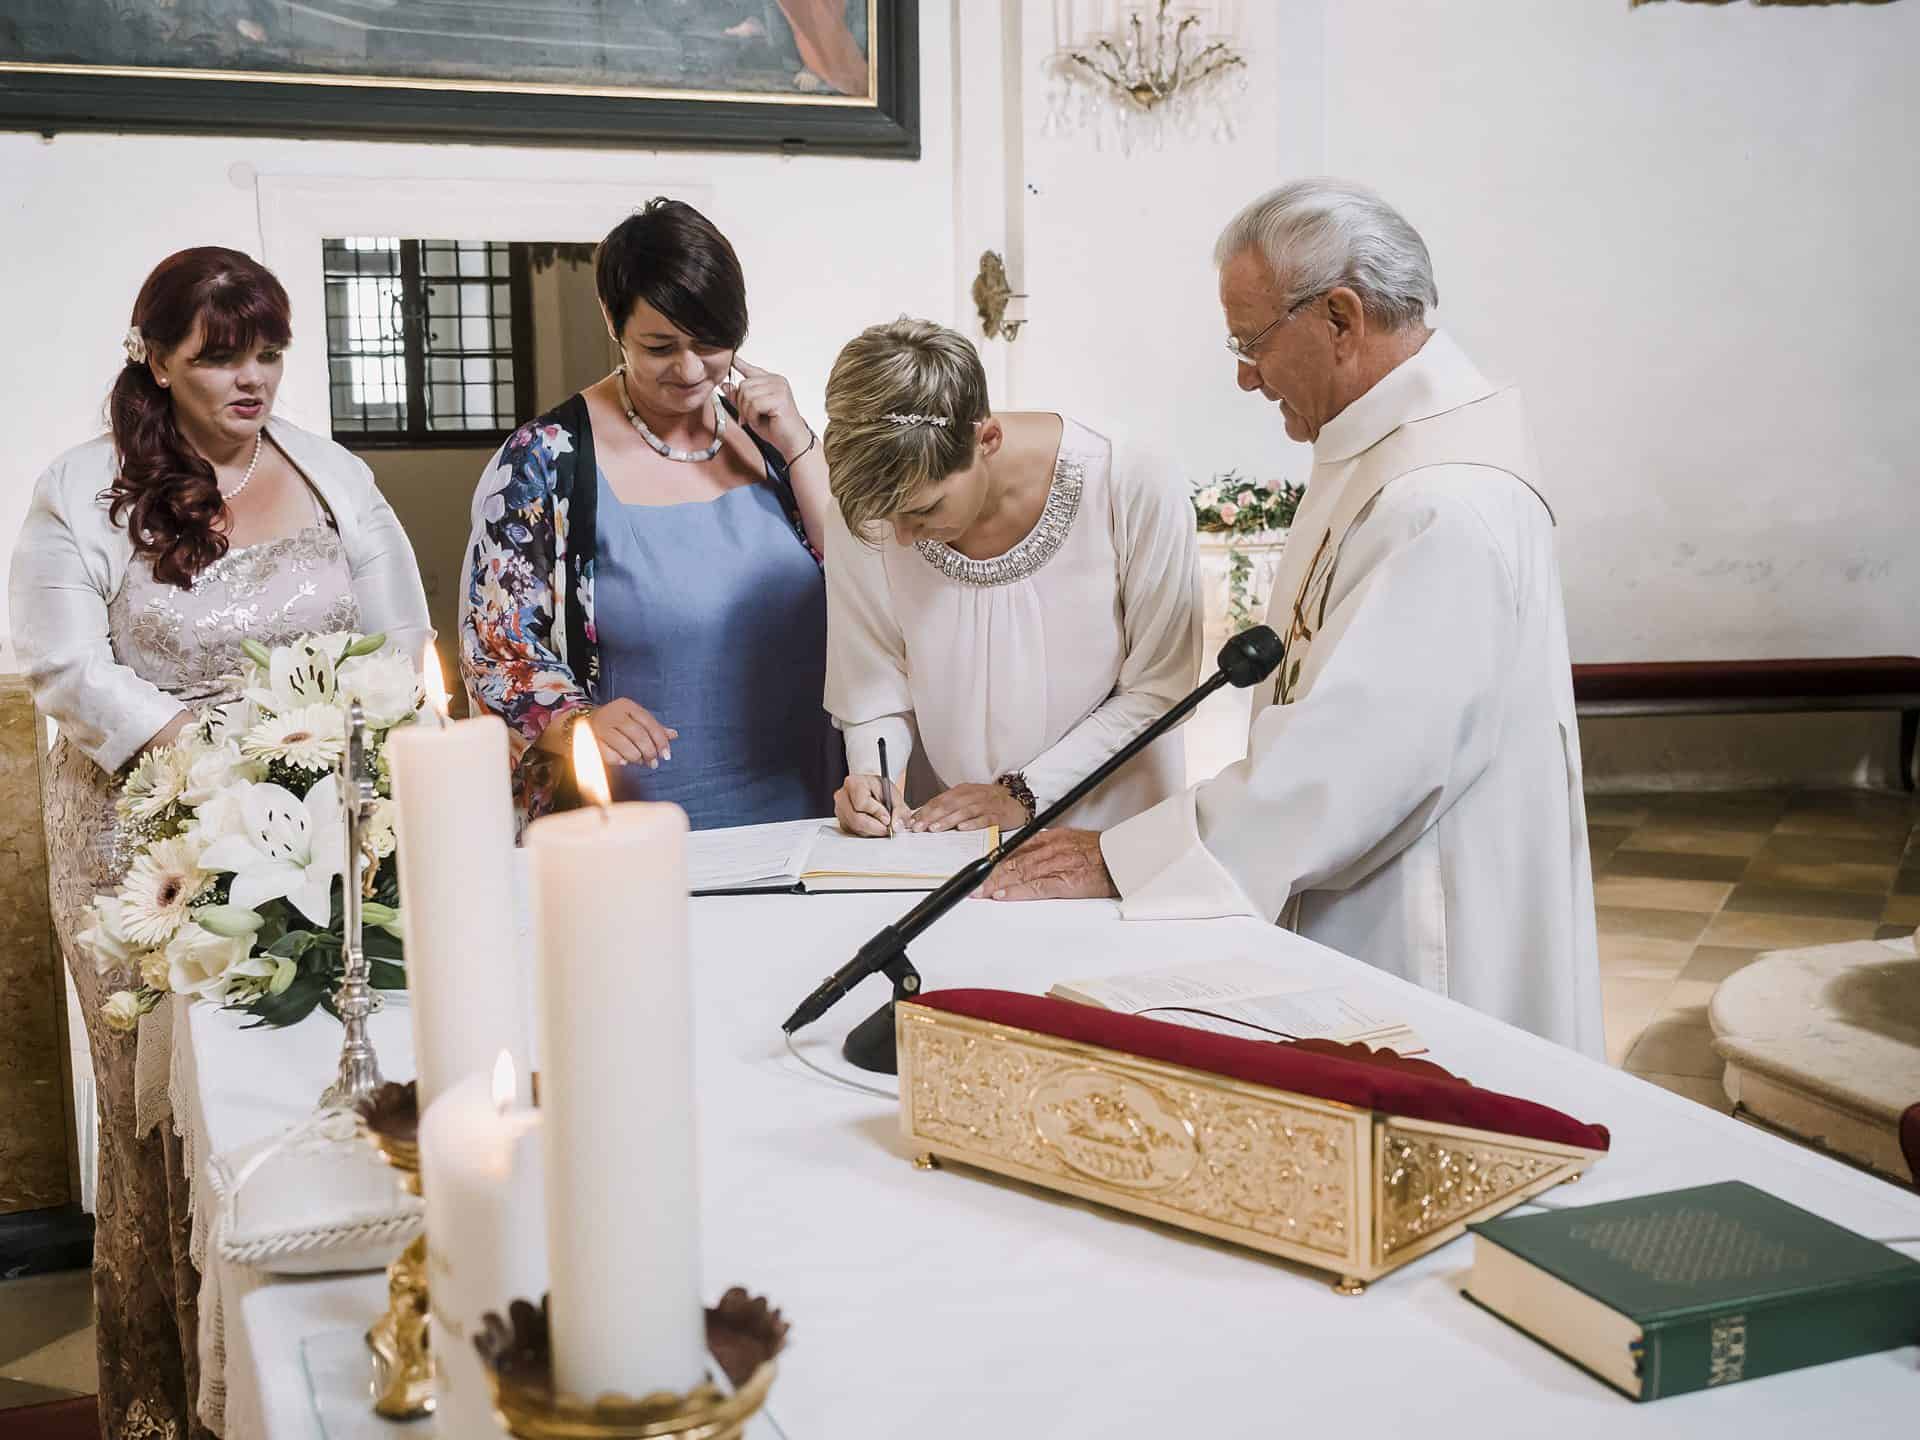 Ein Priester unterschreibt vor einer Gruppe von Menschen eine Heiratsurkunde.